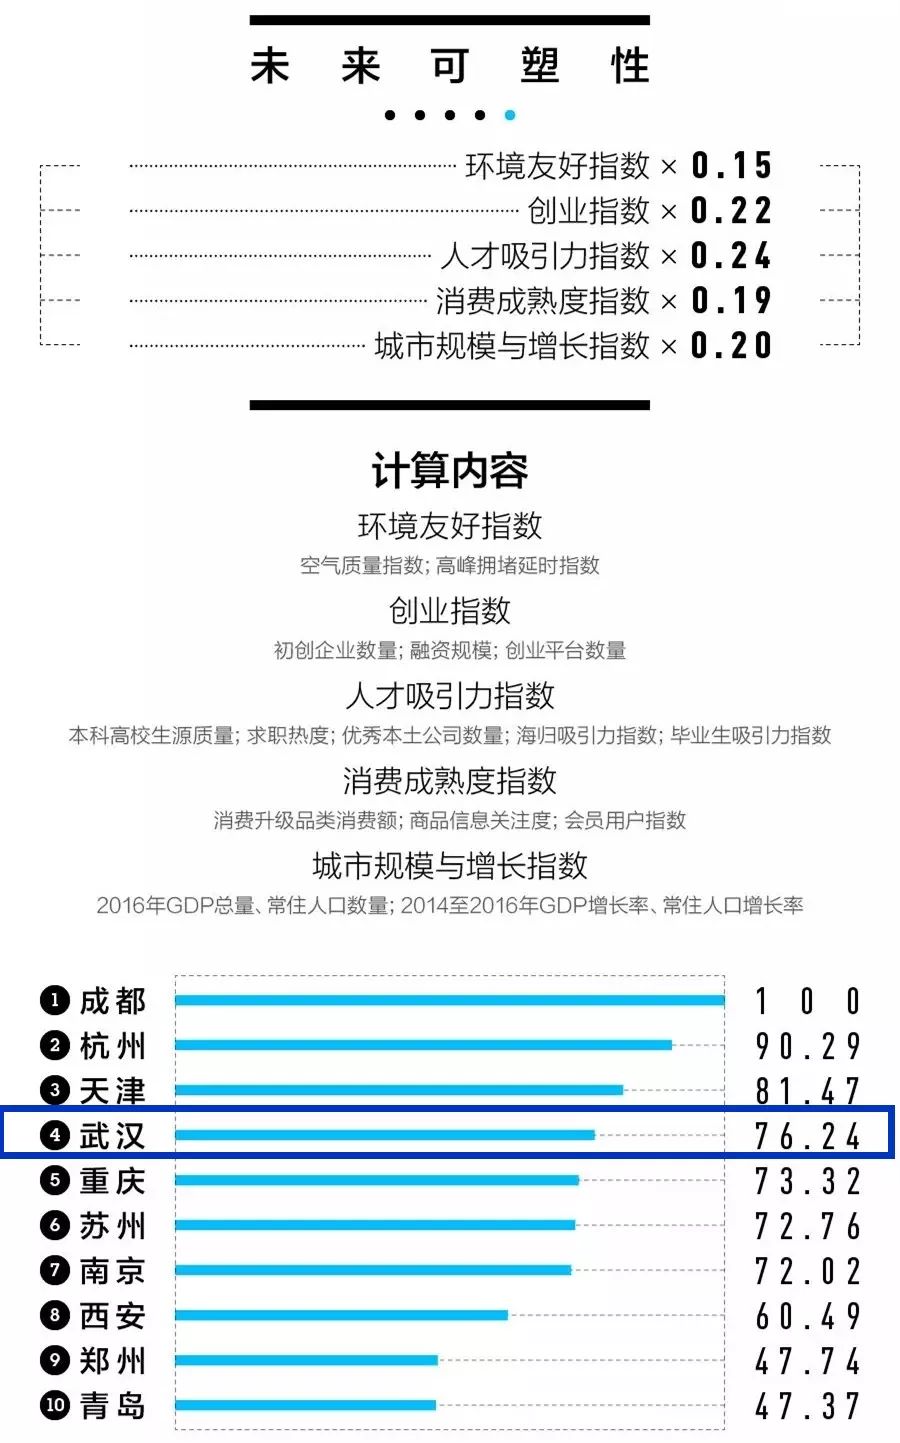 刚刚发布!2018中国一二三四五线城市排名出炉